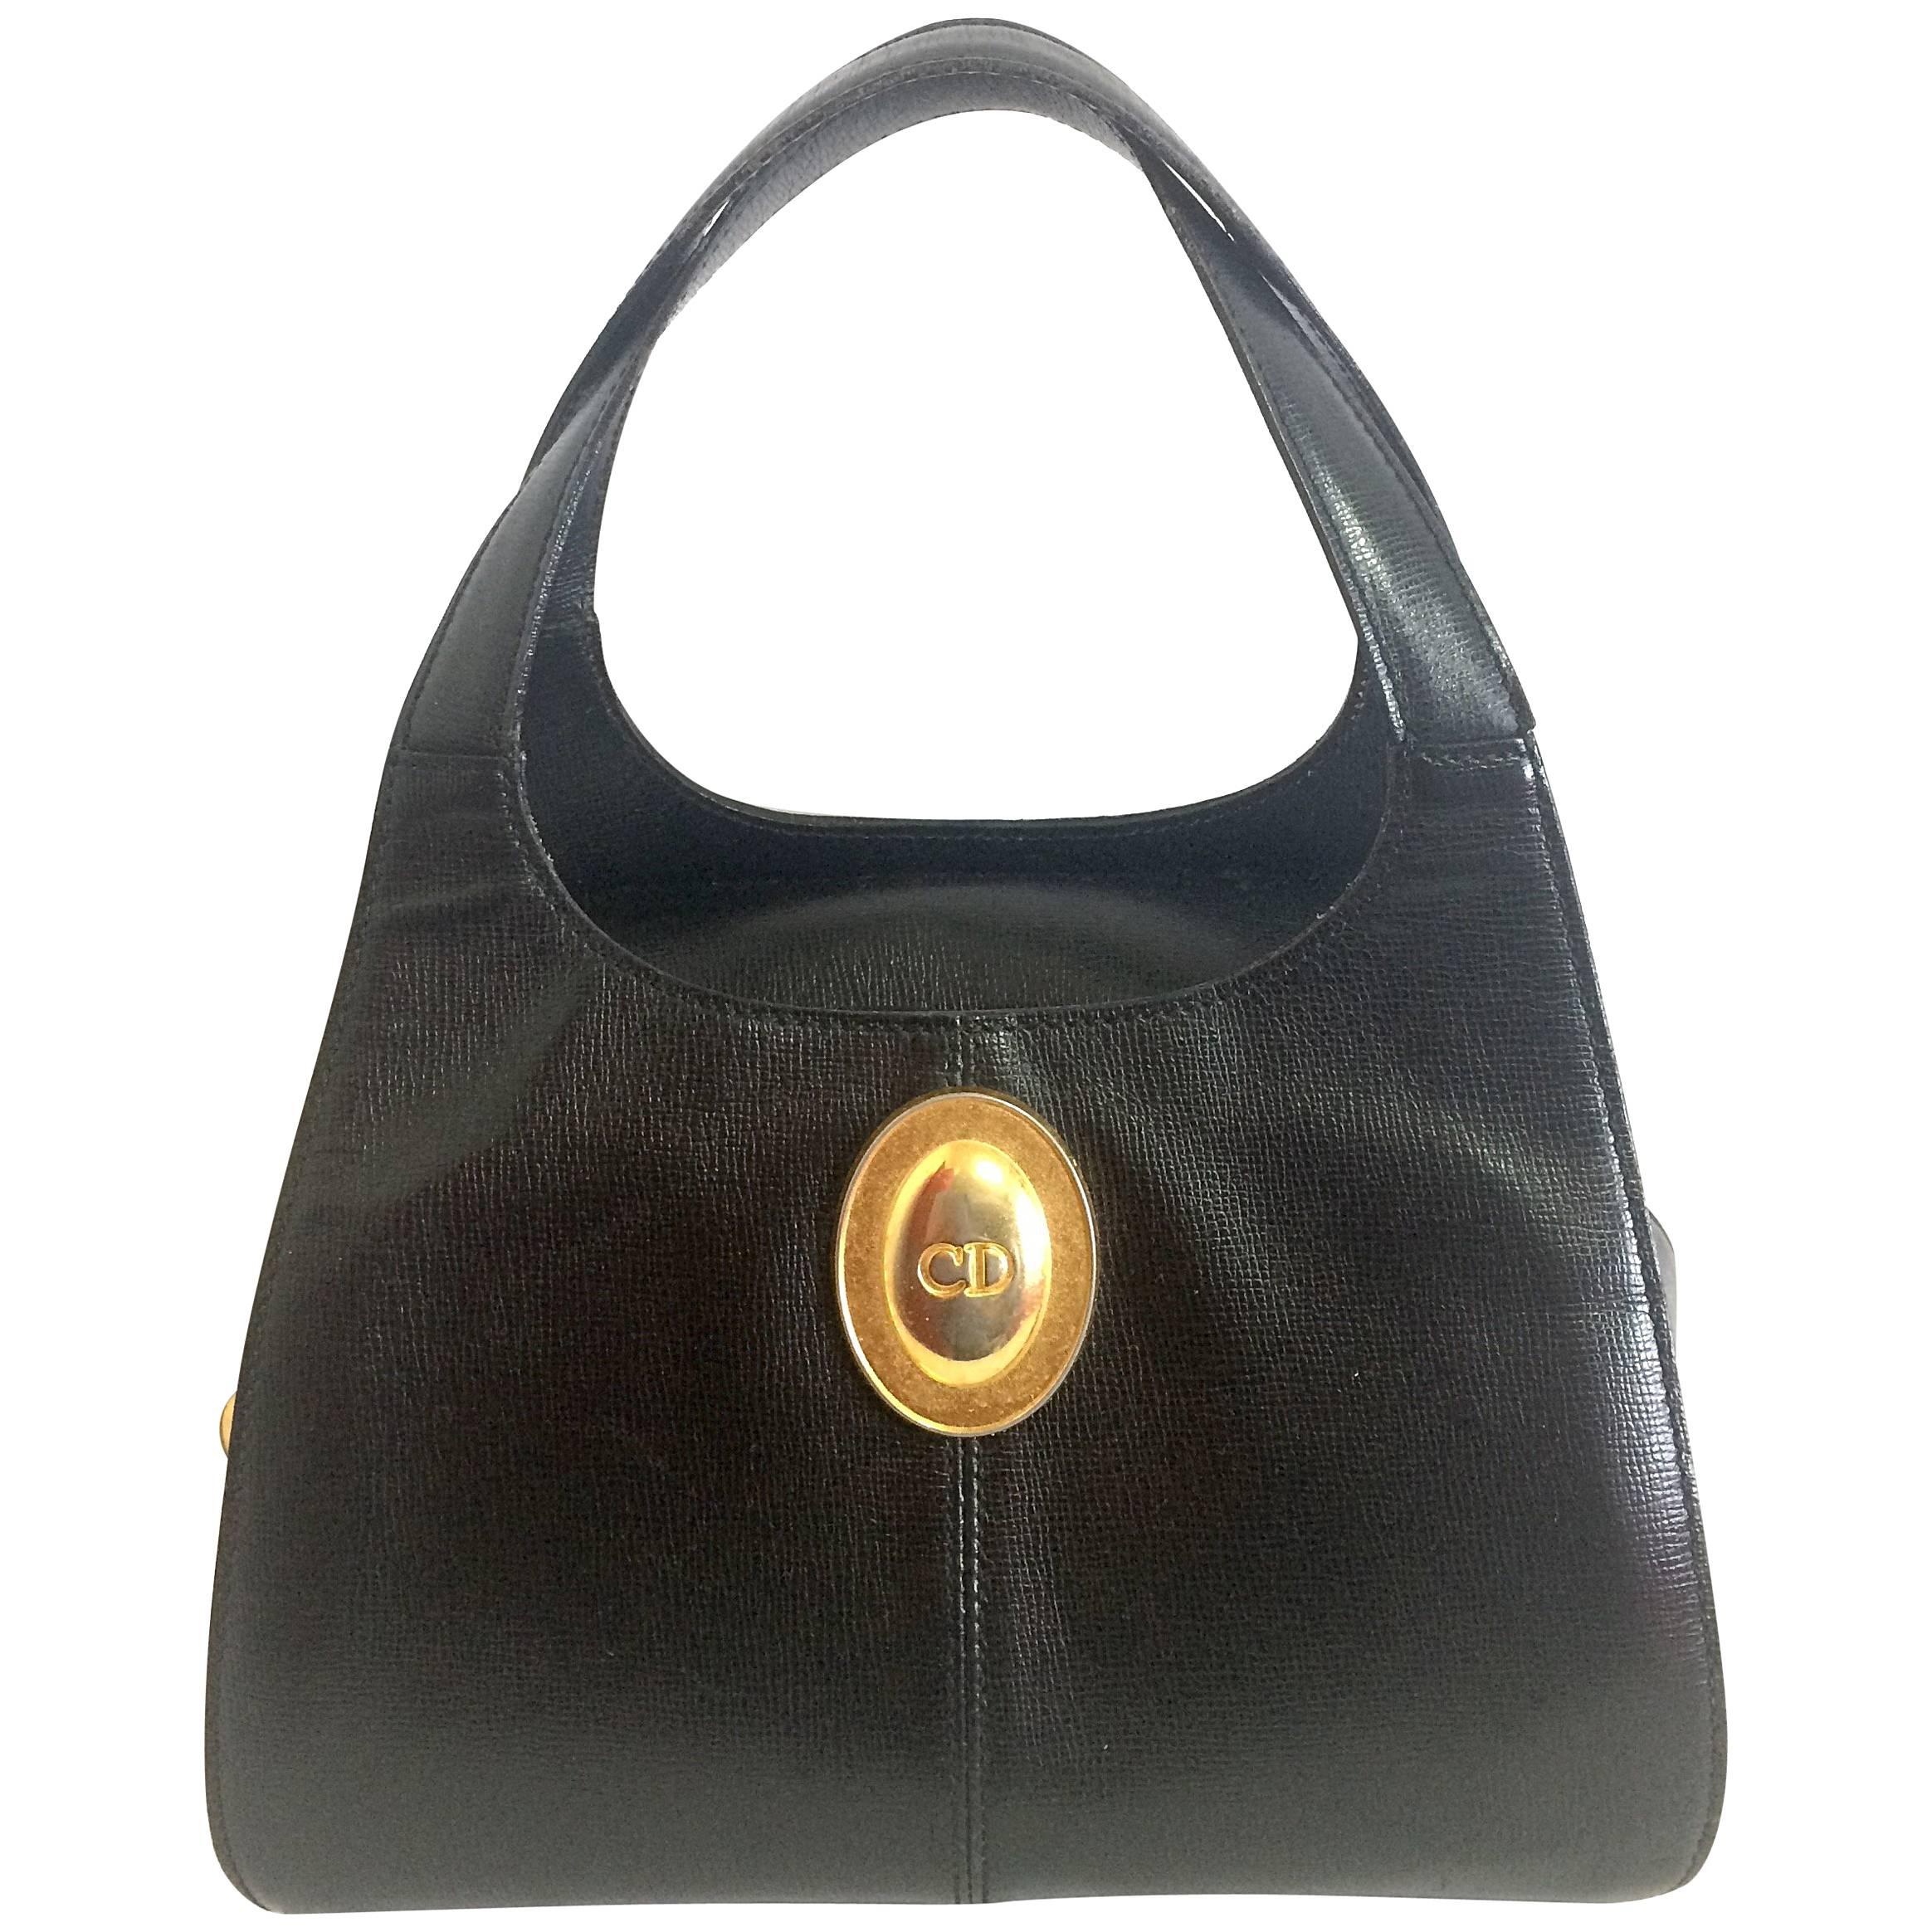 Vintage Christian Dior grained black leather handbag with oval golden CD logo.  For Sale